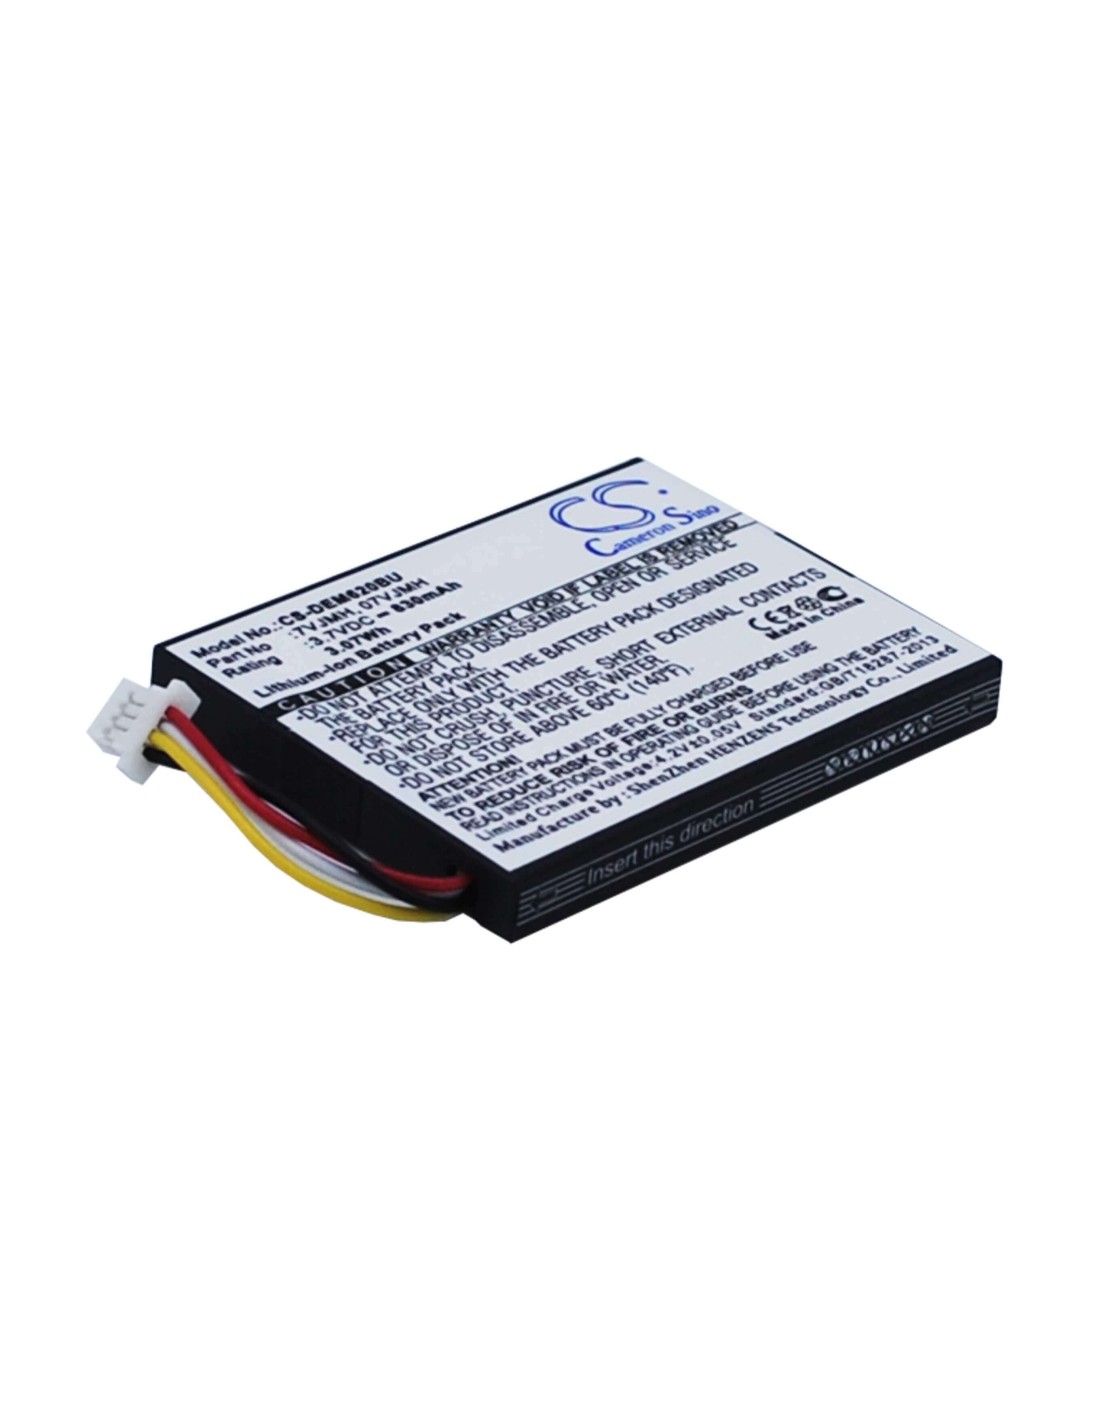 Battery for Dell Poweredge M620, Poweredge R320, Poweredge R420 3.7V, 830mAh - 3.07Wh